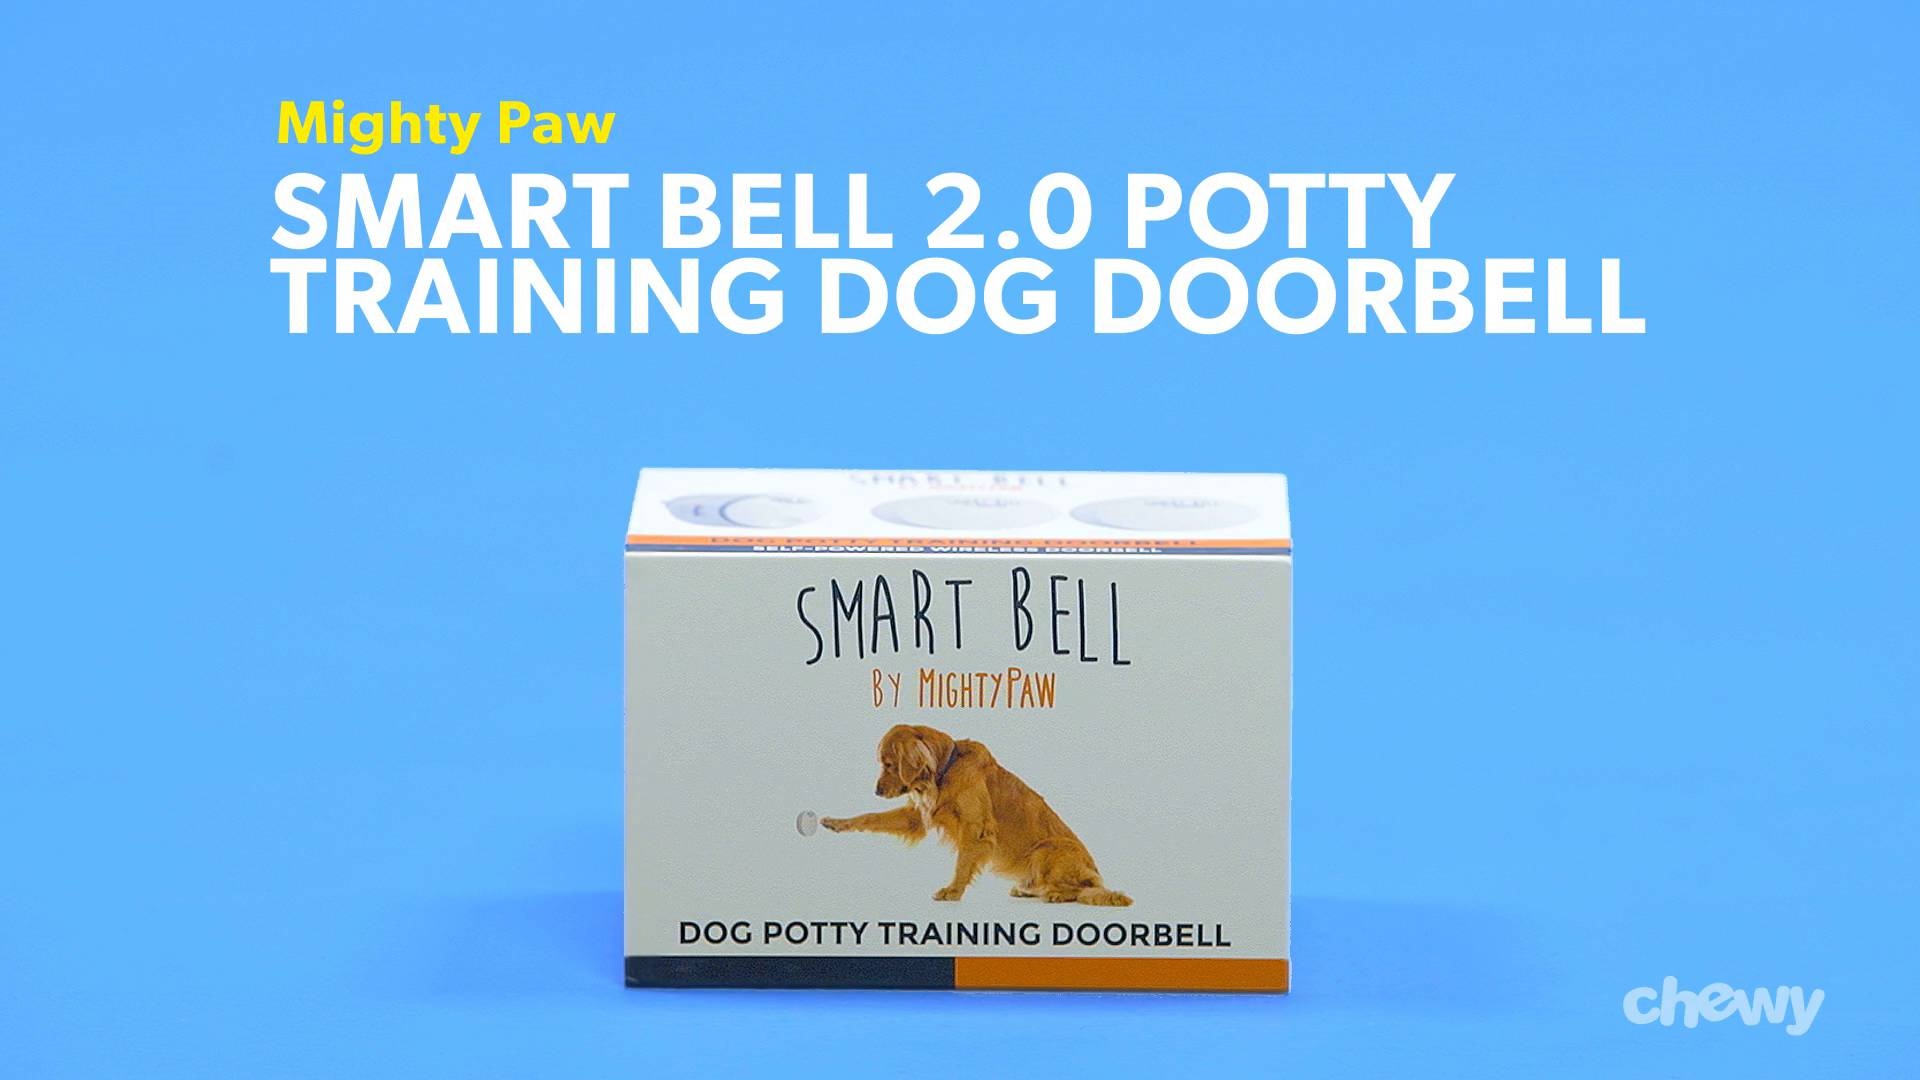 potty training doorbell